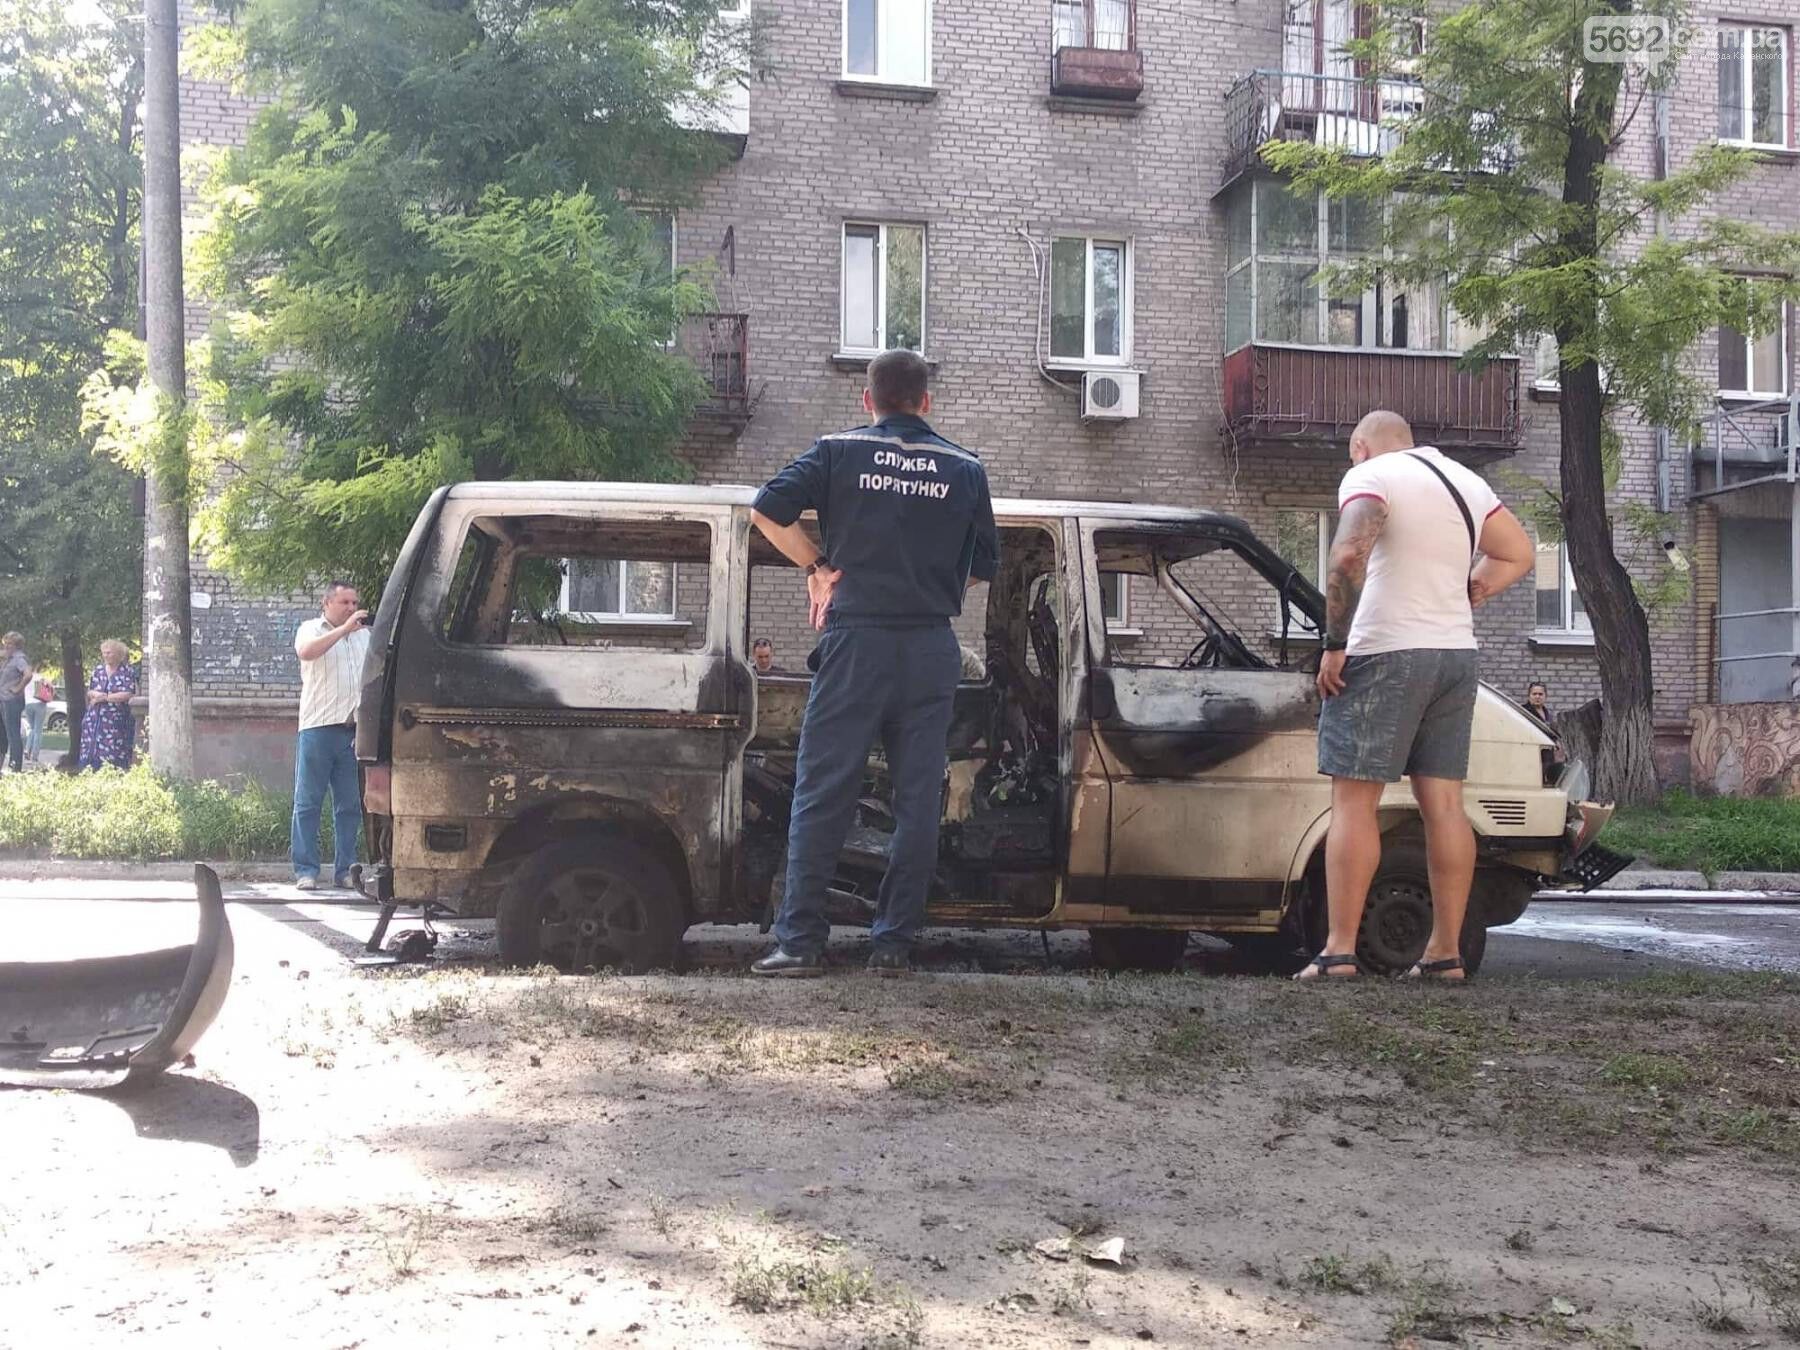 На Днепропетровщине взорвали авто с депутатом: опубликованы первые фото и видео